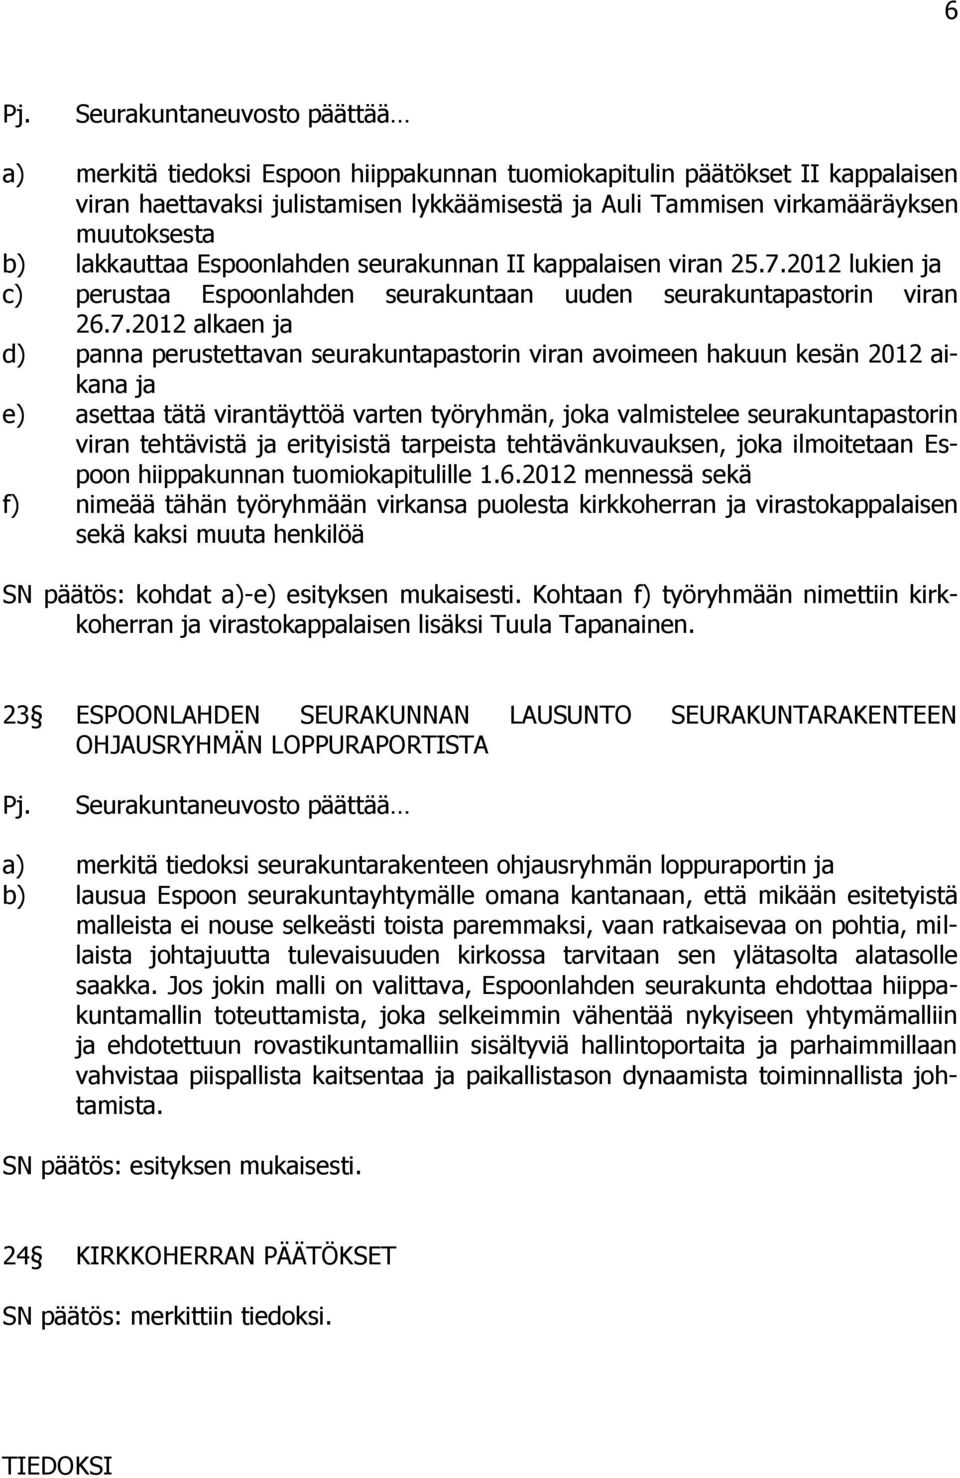 2012 lukien c) perustaa Espoonlahden seurakuntaan uuden seurakuntapastorin viran 26.7.